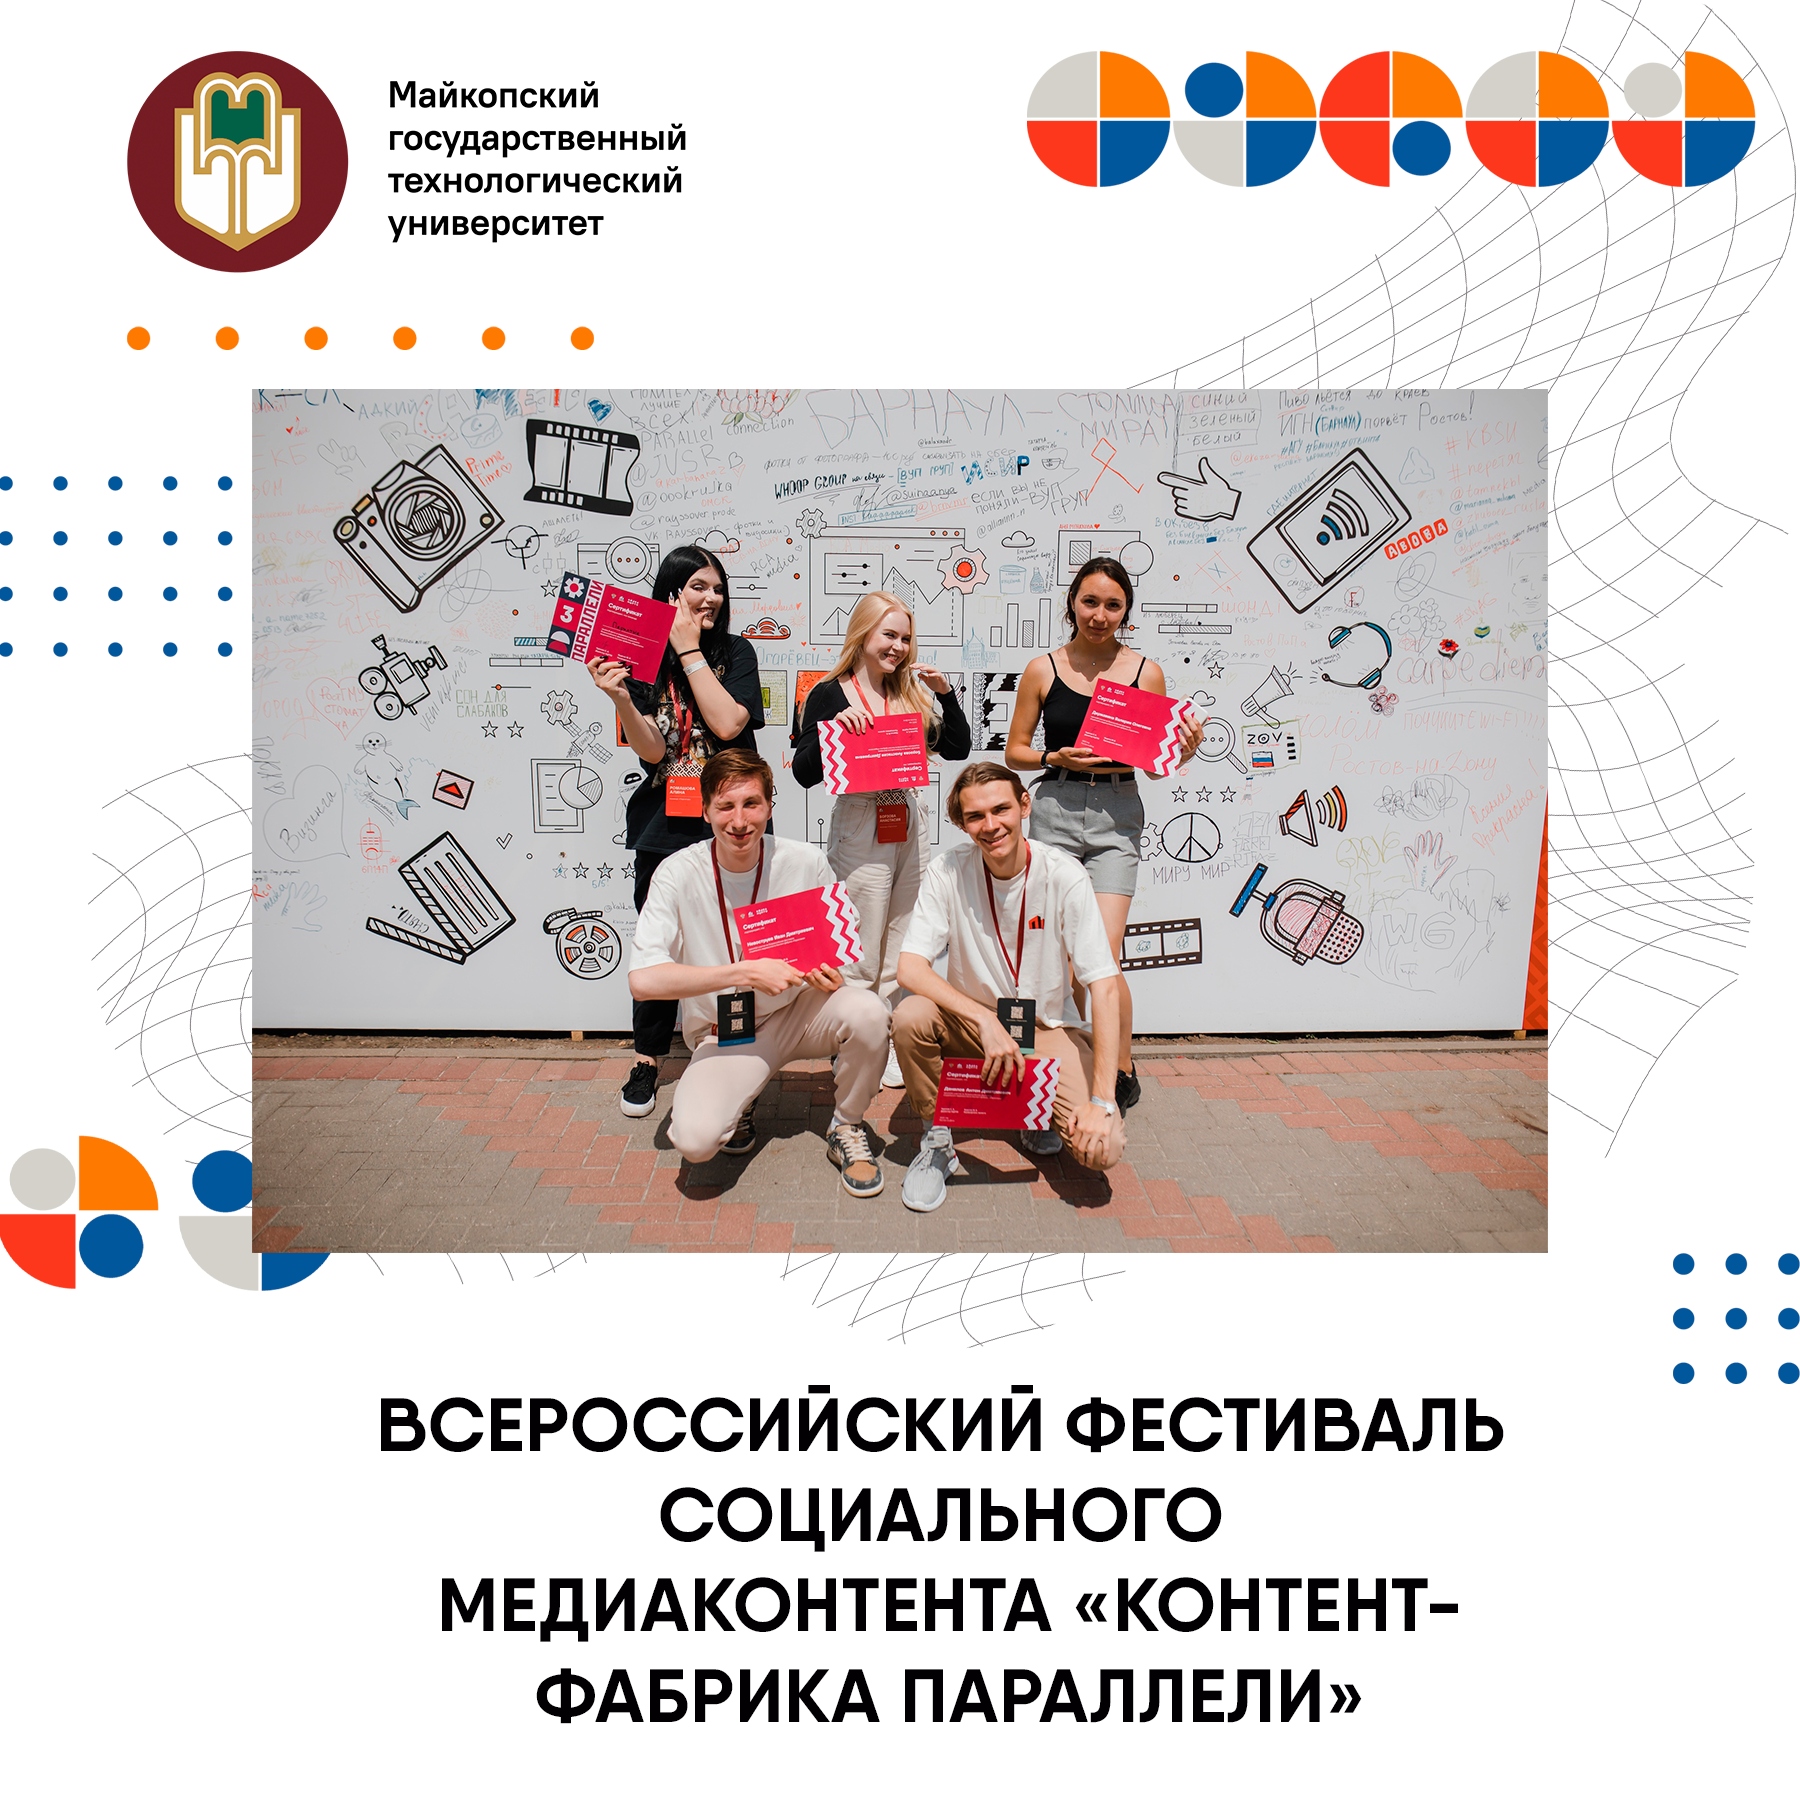 Открыта регистрация на Всероссийский фестиваль социального медиаконтента «Контент-фабрика Параллели»